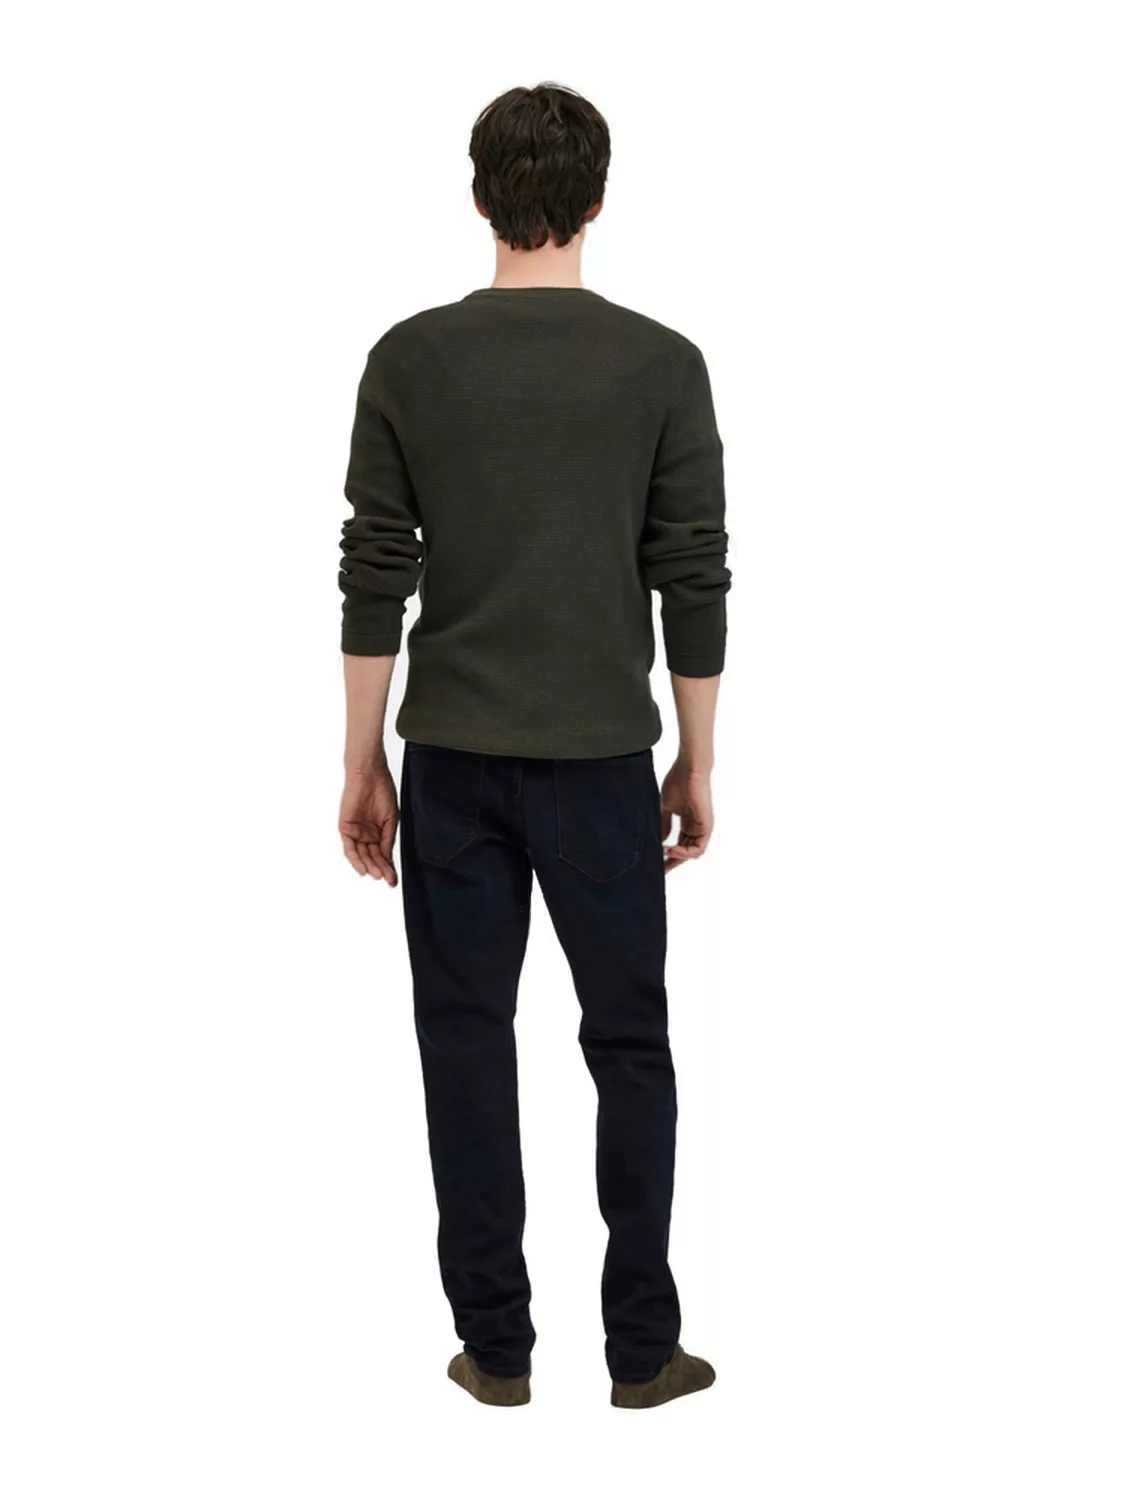 Selected Homme Herren Jeans SLH196-STRAIGHTSCOTT 24601 - Straight Fit - Bla günstig online kaufen